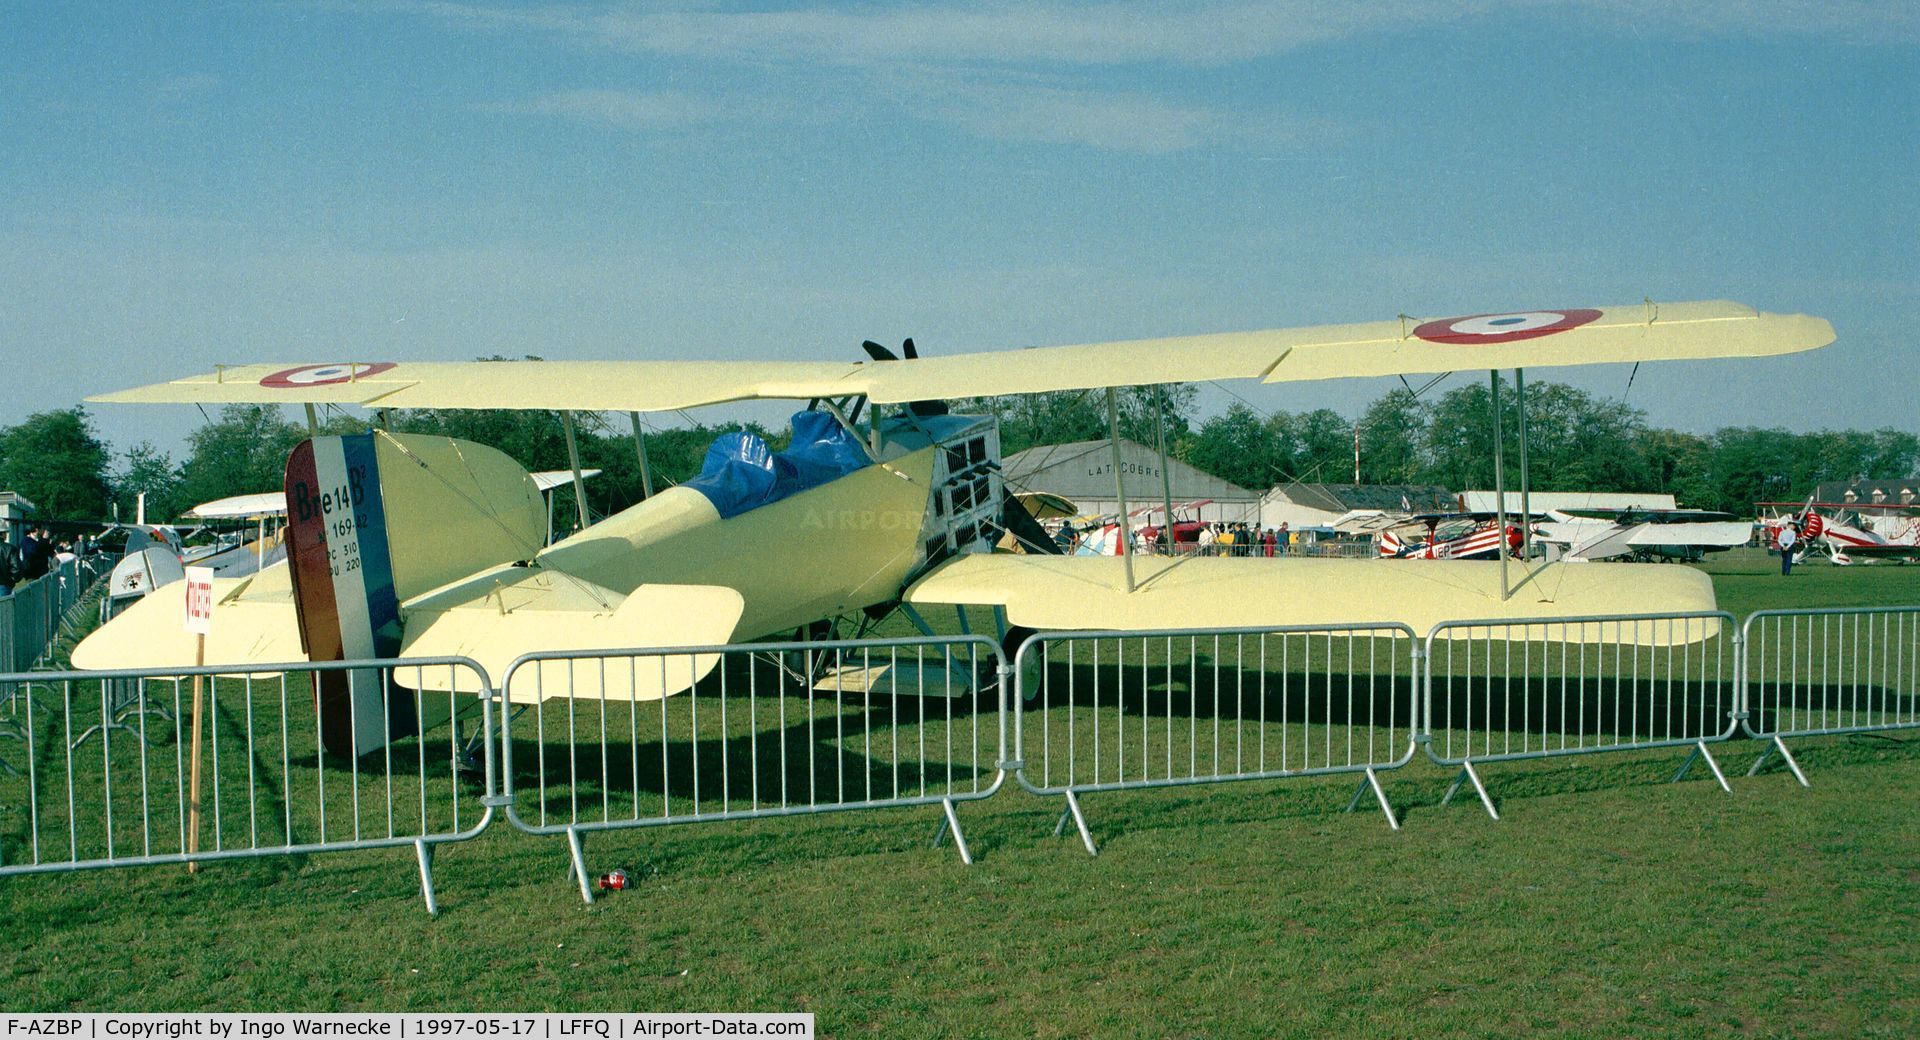 F-AZBP, 1980 Breguet 14P Replica C/N 02, Breguet Br.XIV replica at the Meeting Aerien 1997, La-Ferte-Alais, Cerny